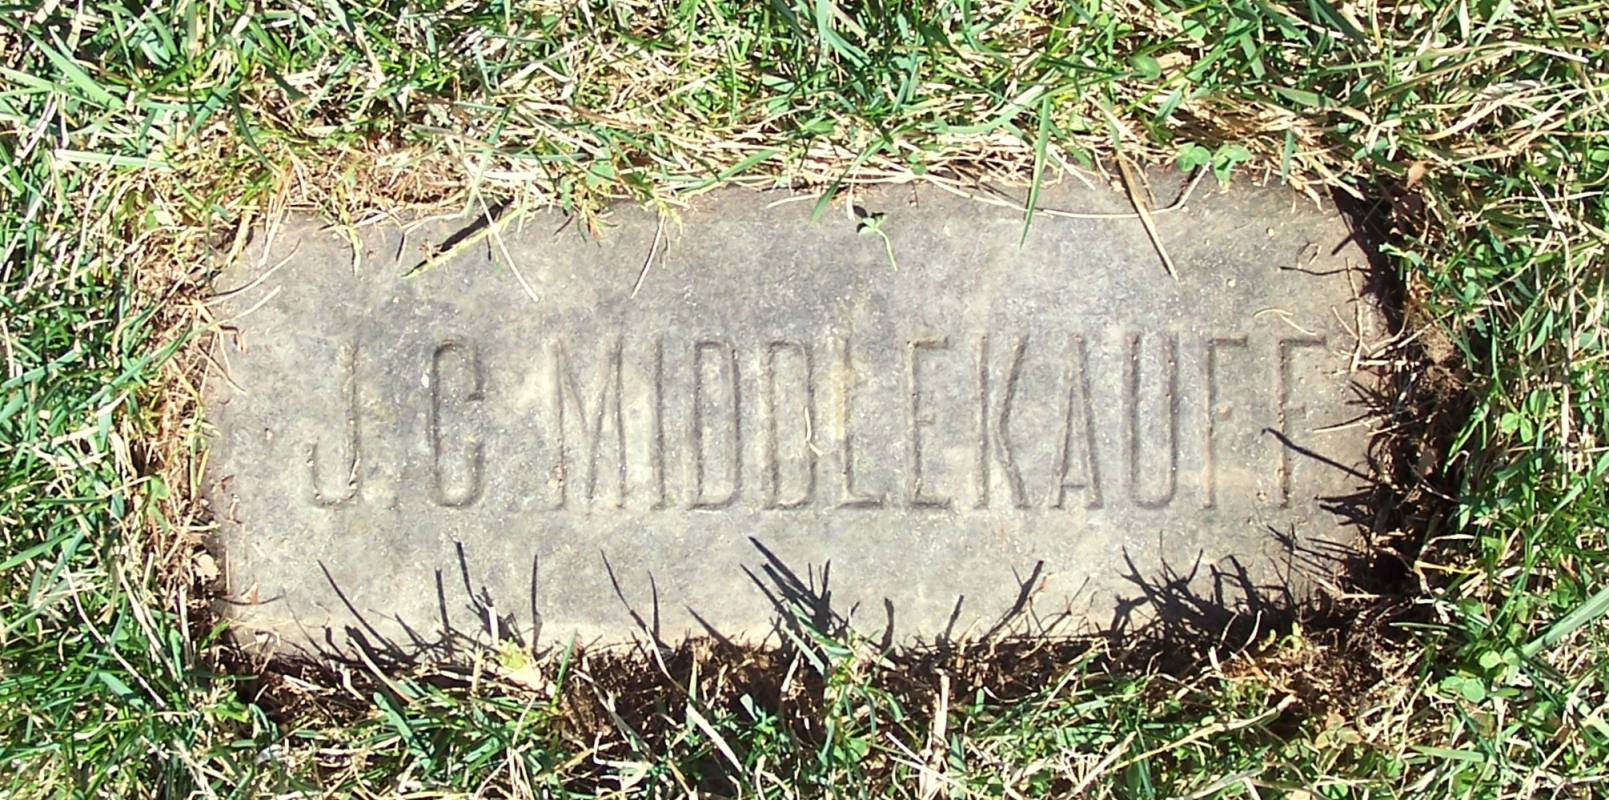 John Claude Middlekauff